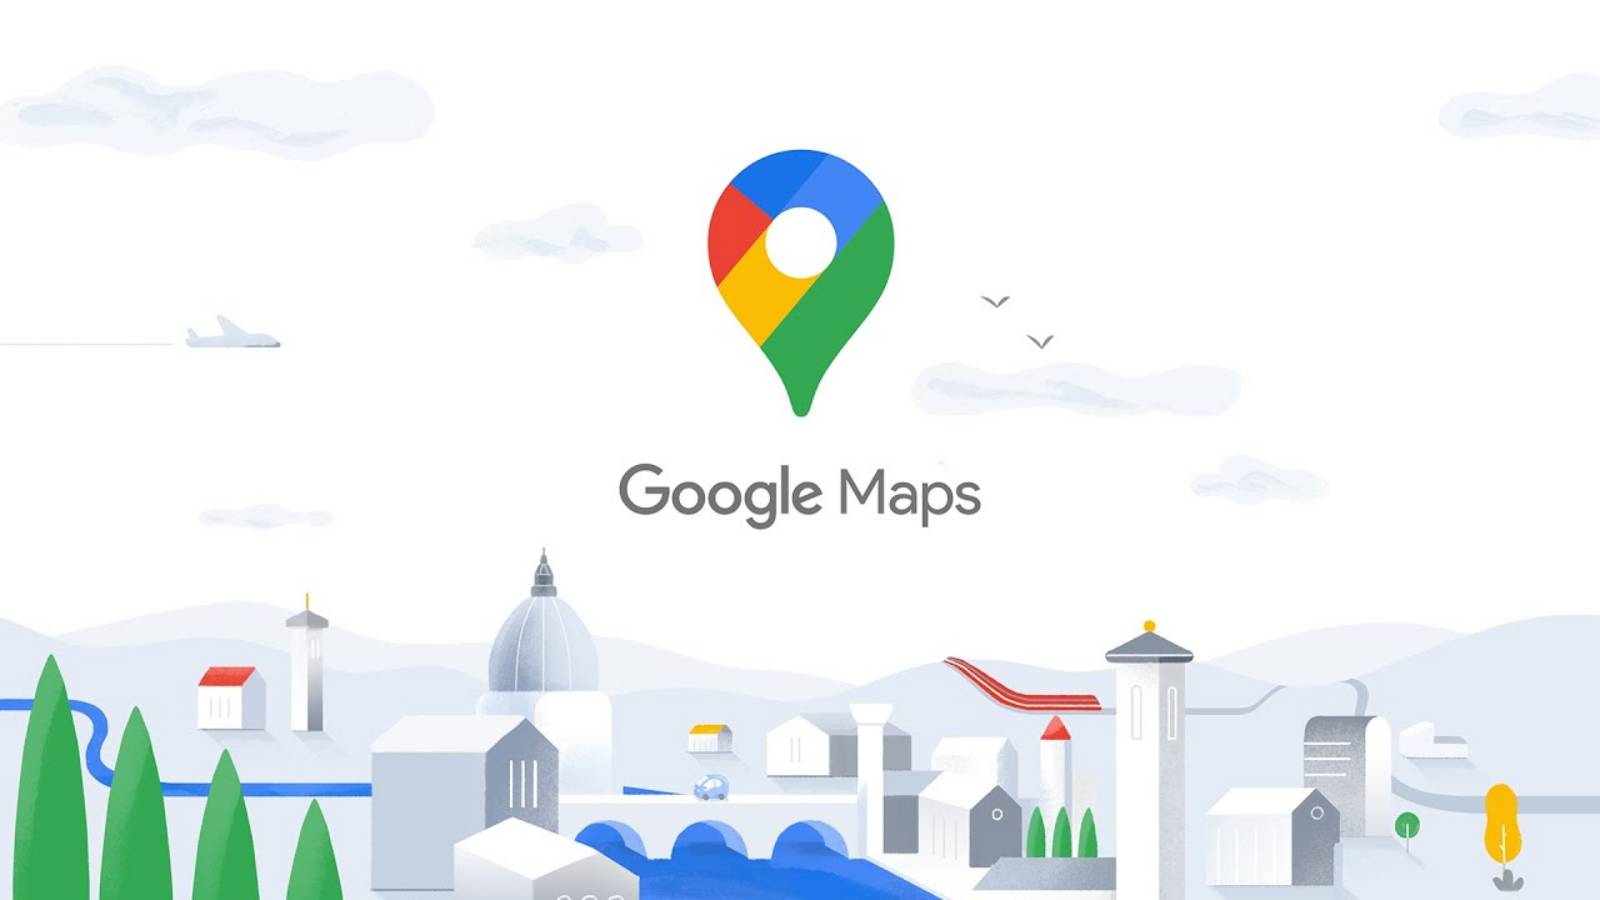 Google Maps Update is beschikbaar voor nieuwe telefoons